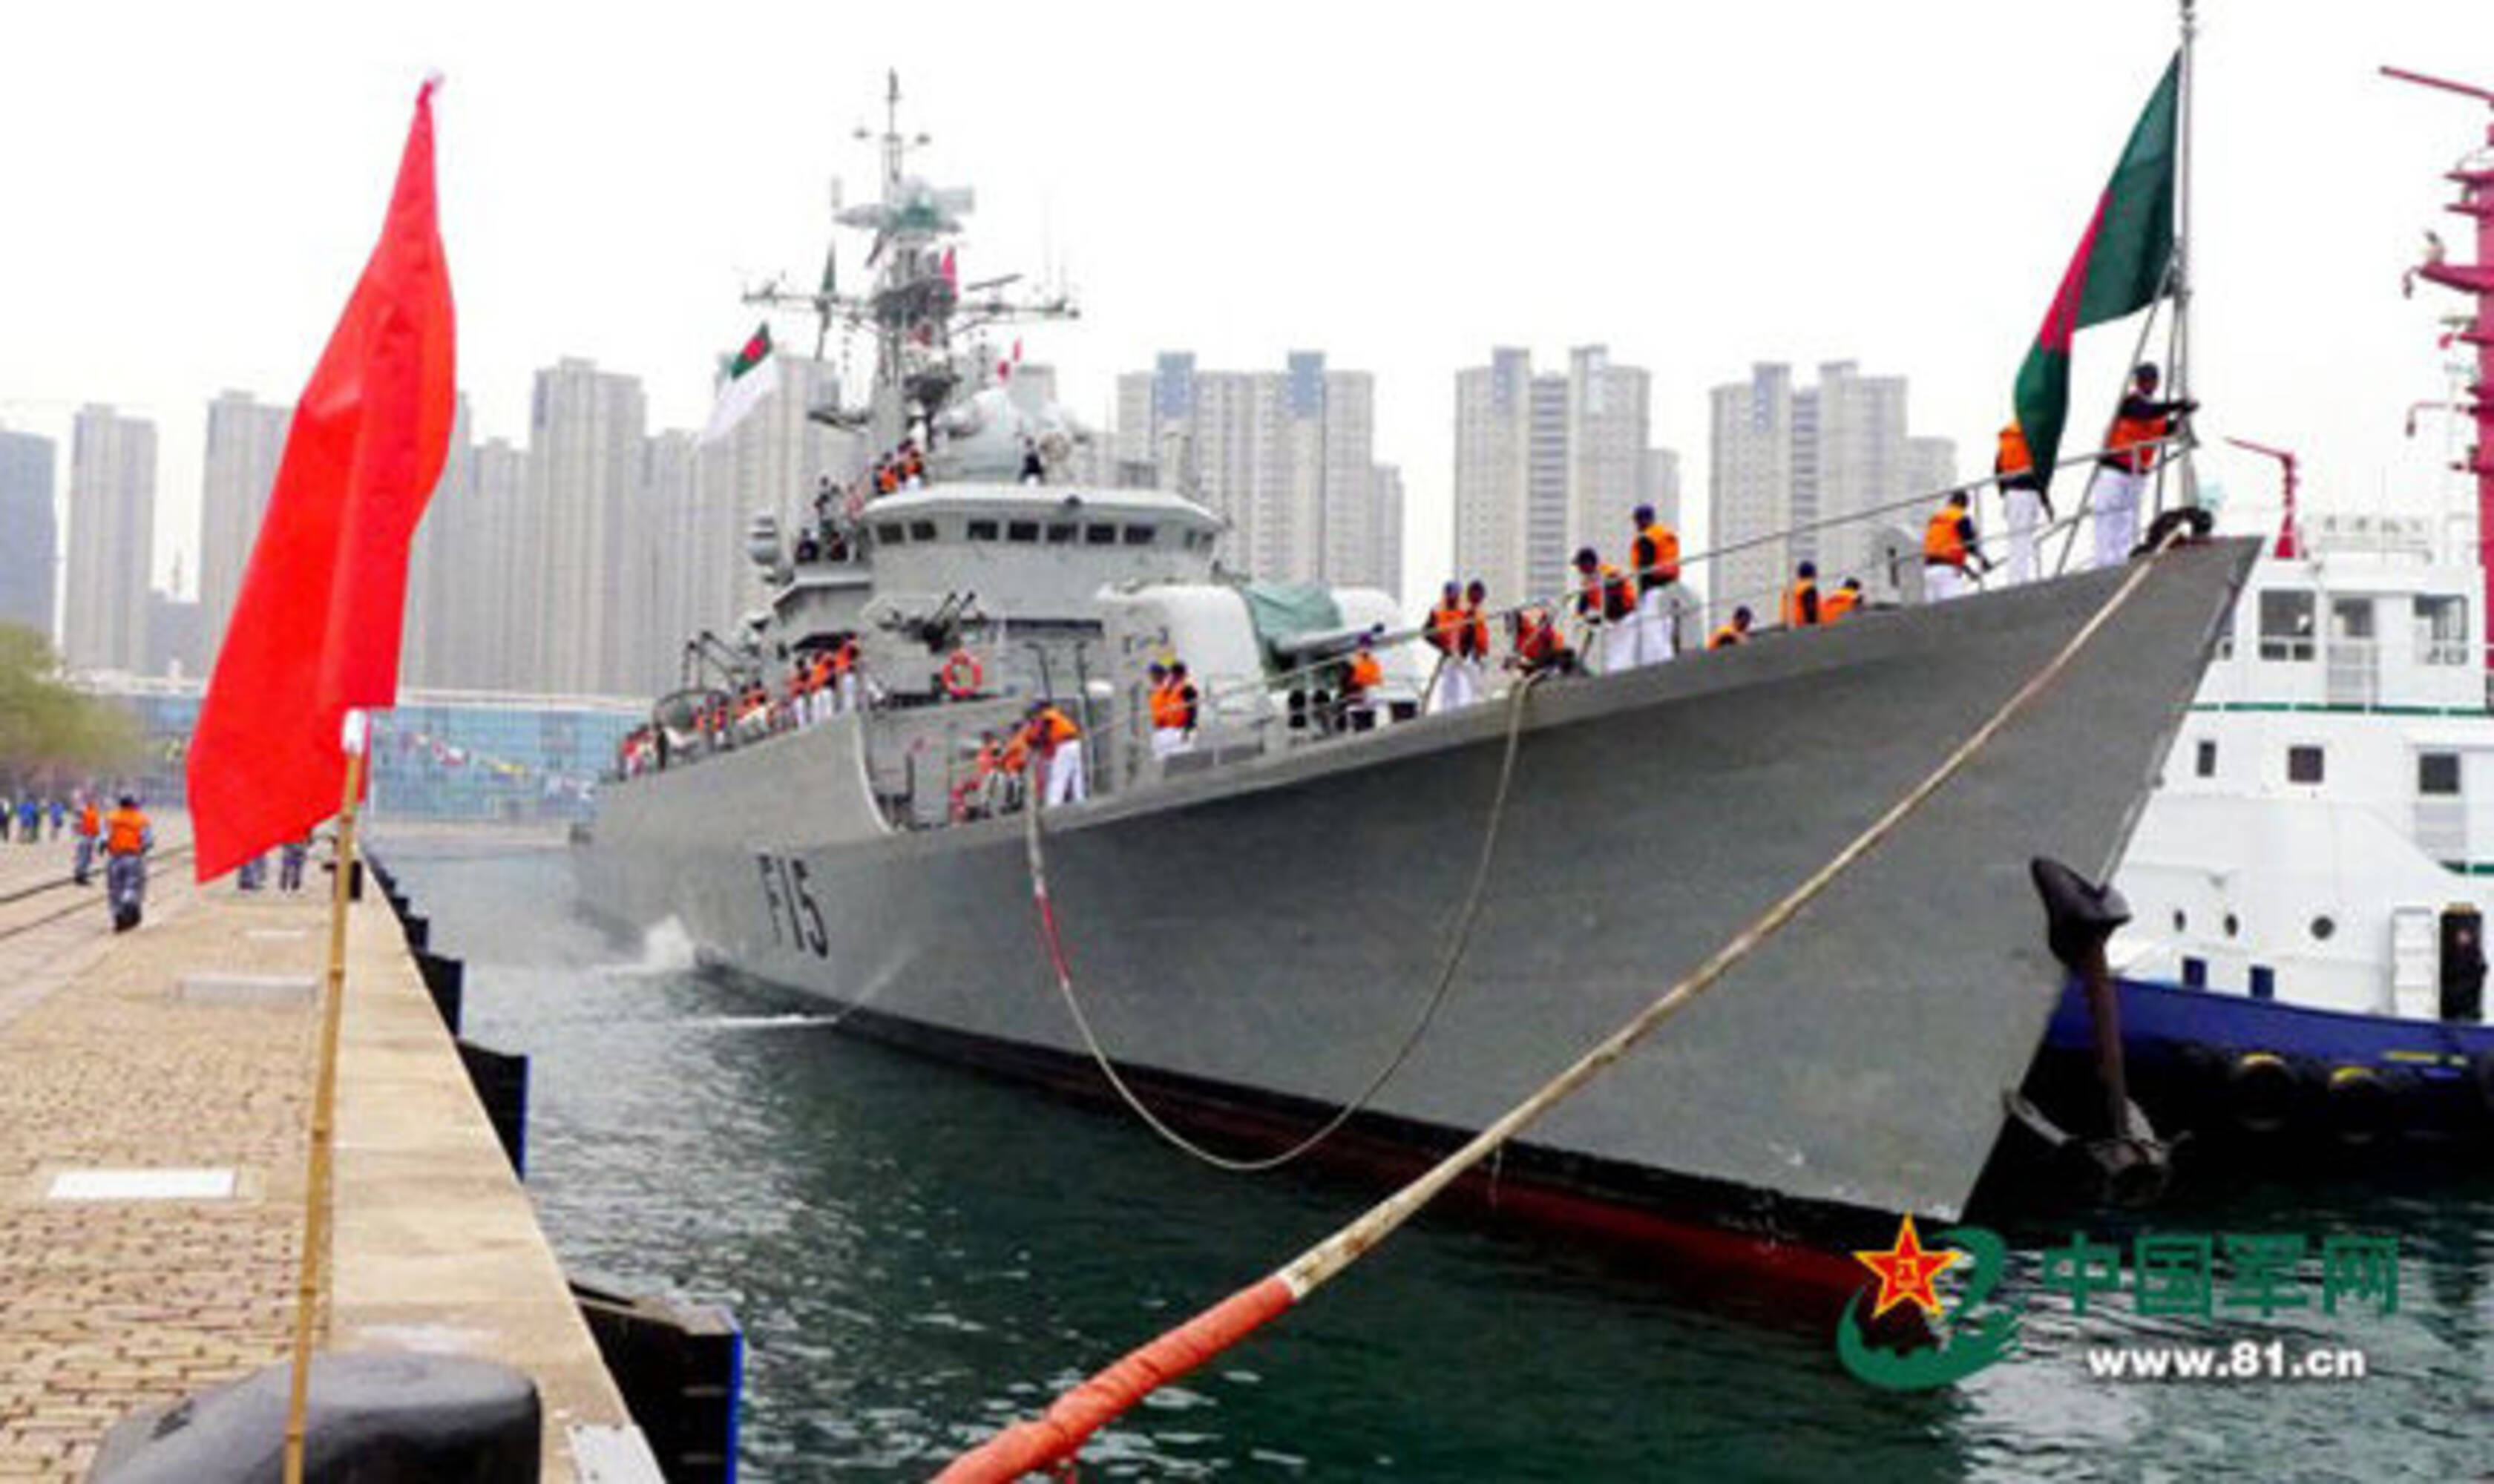 孟加拉国护卫舰抵达青岛 应邀参加海上联合演习 